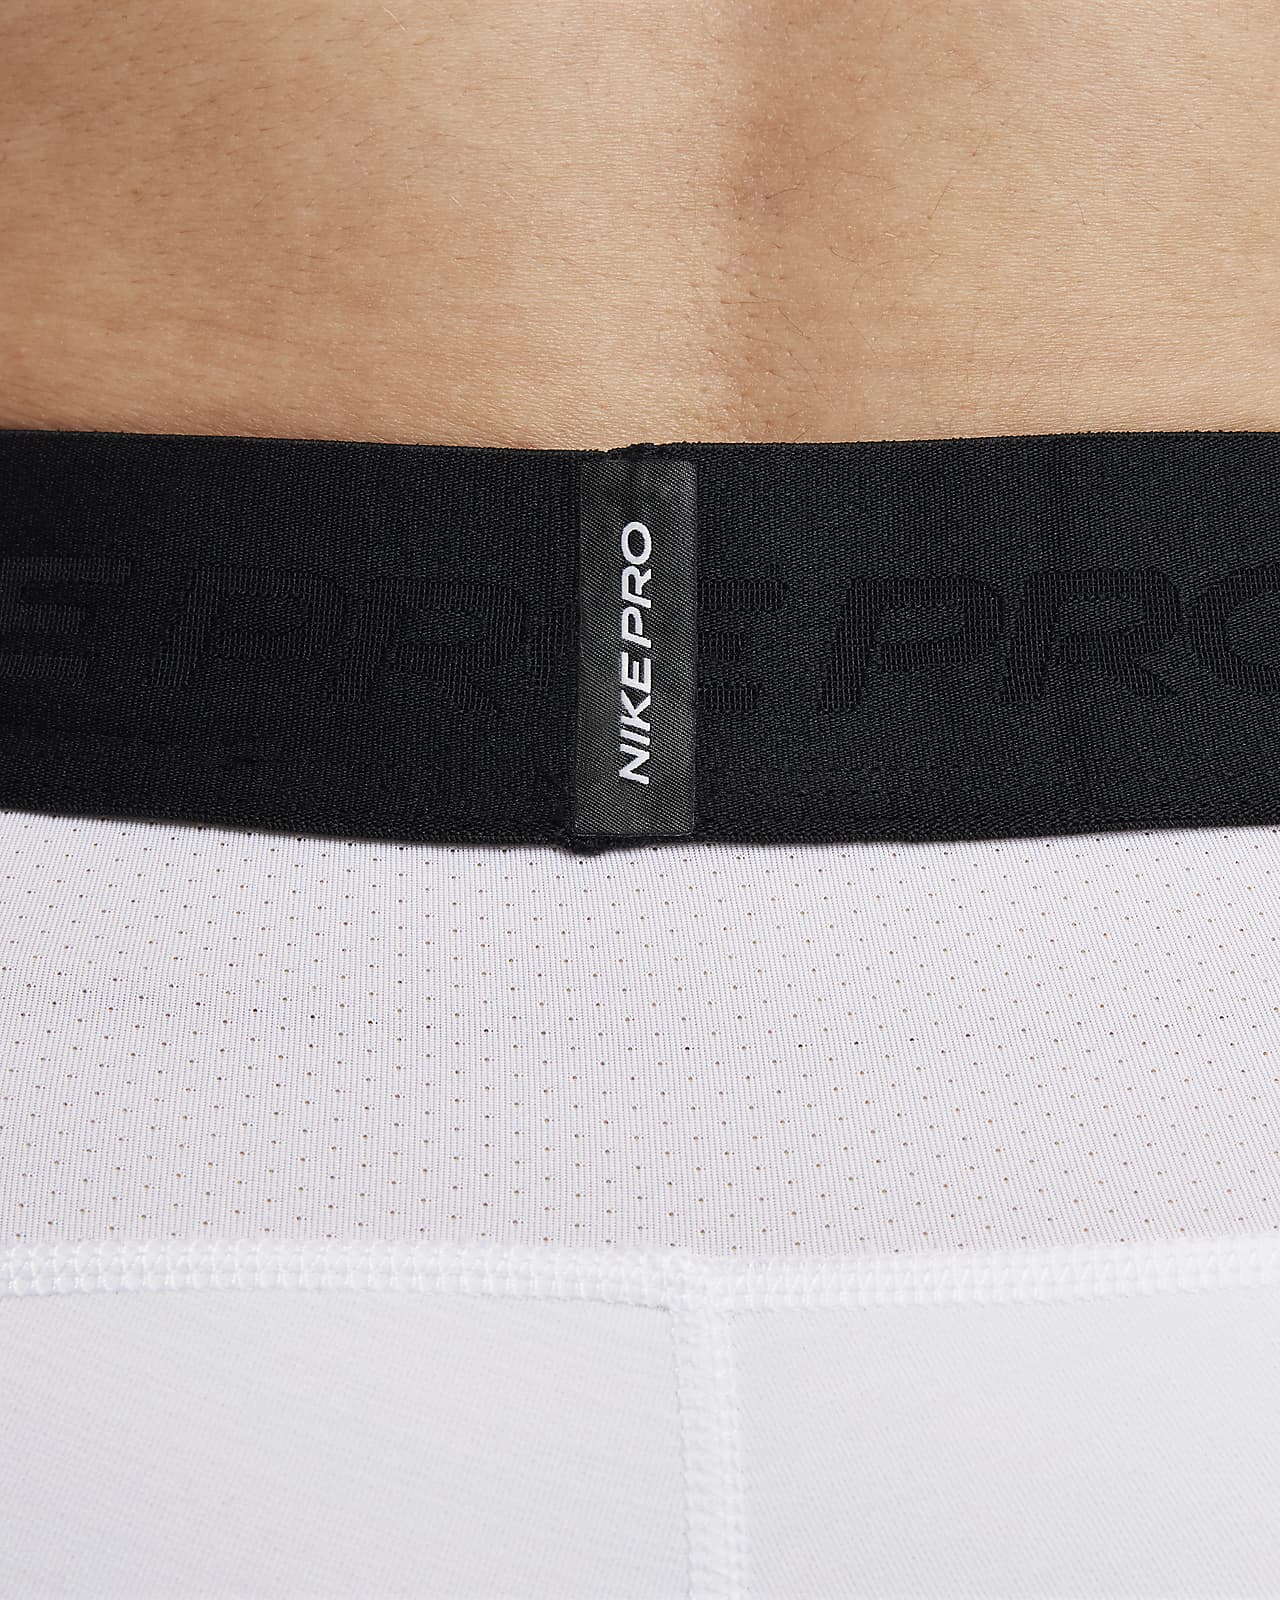 Nike Pro Warm Tights - Mens